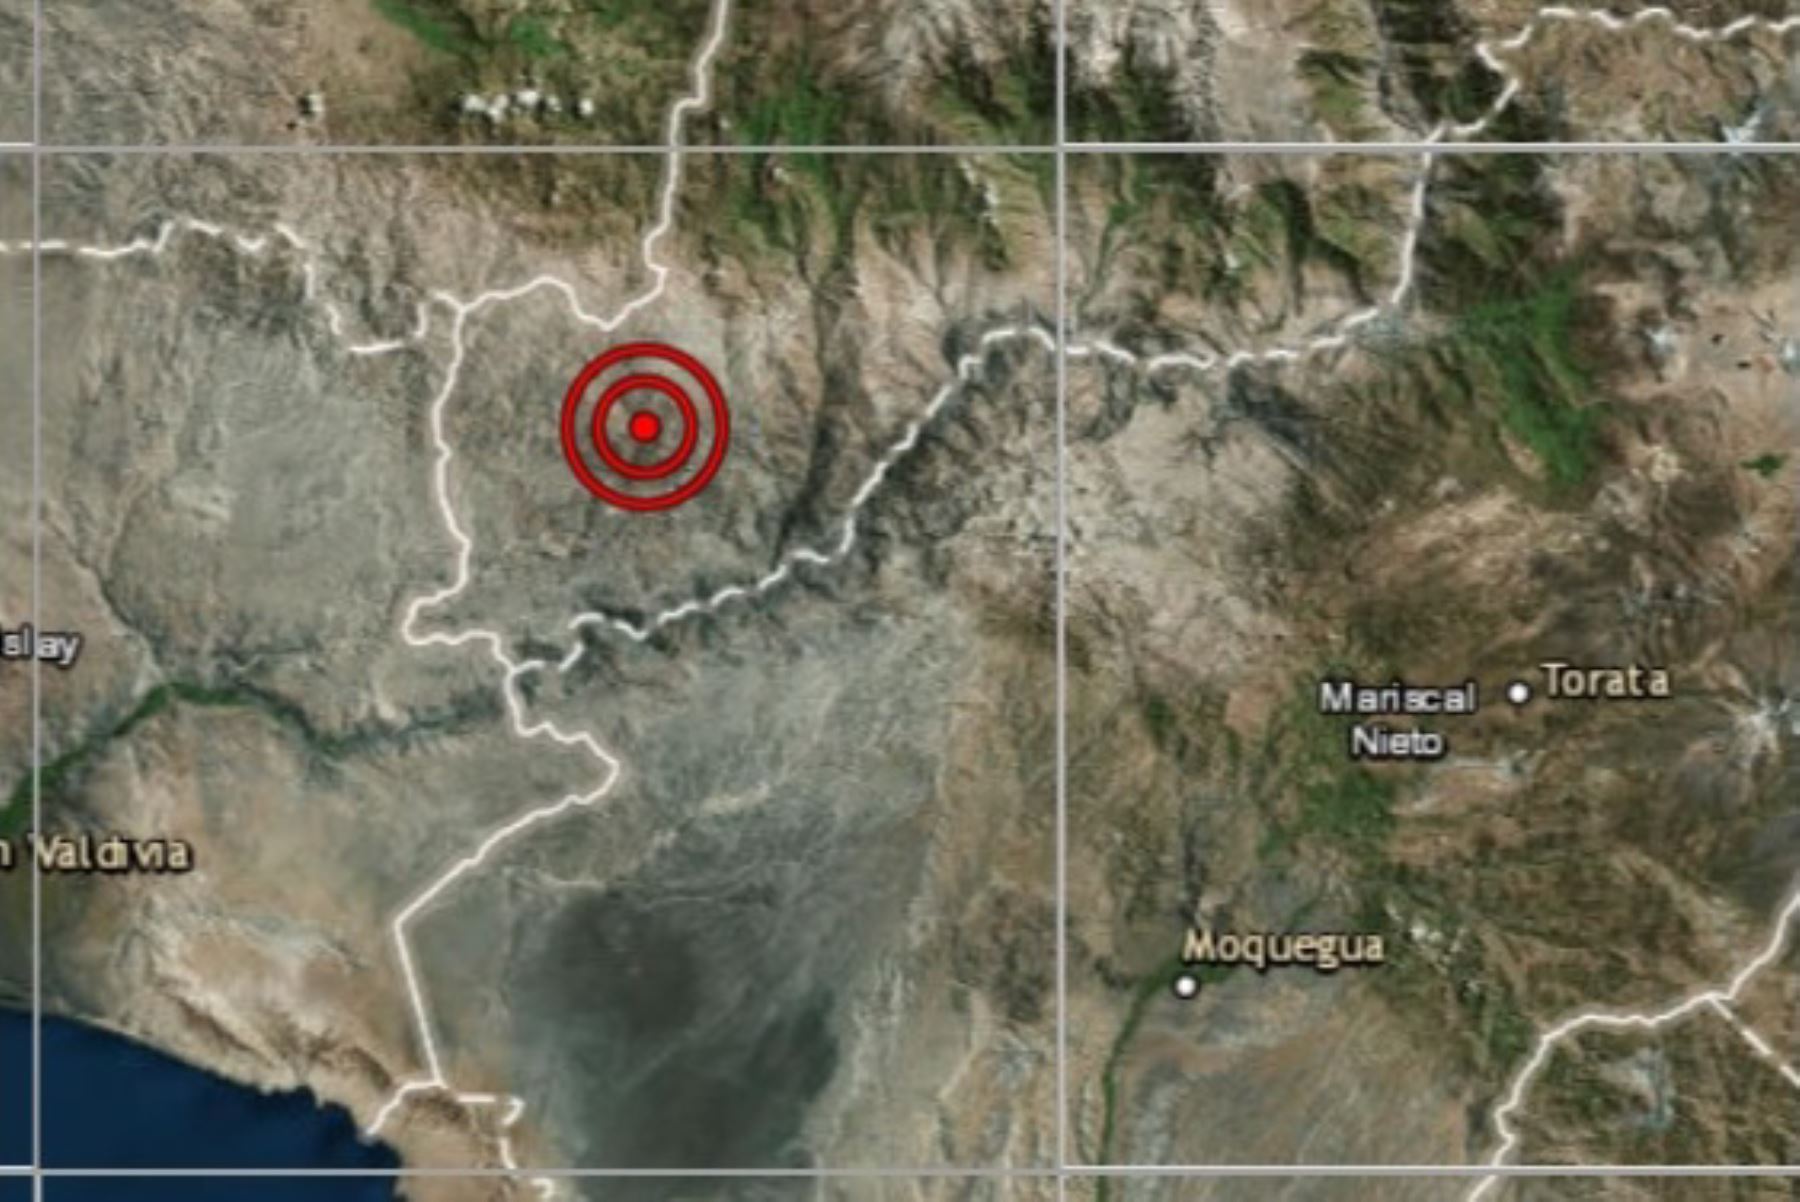 Región Moquegua fue remecida esta madrugada por un temblor de magnitud 3.6